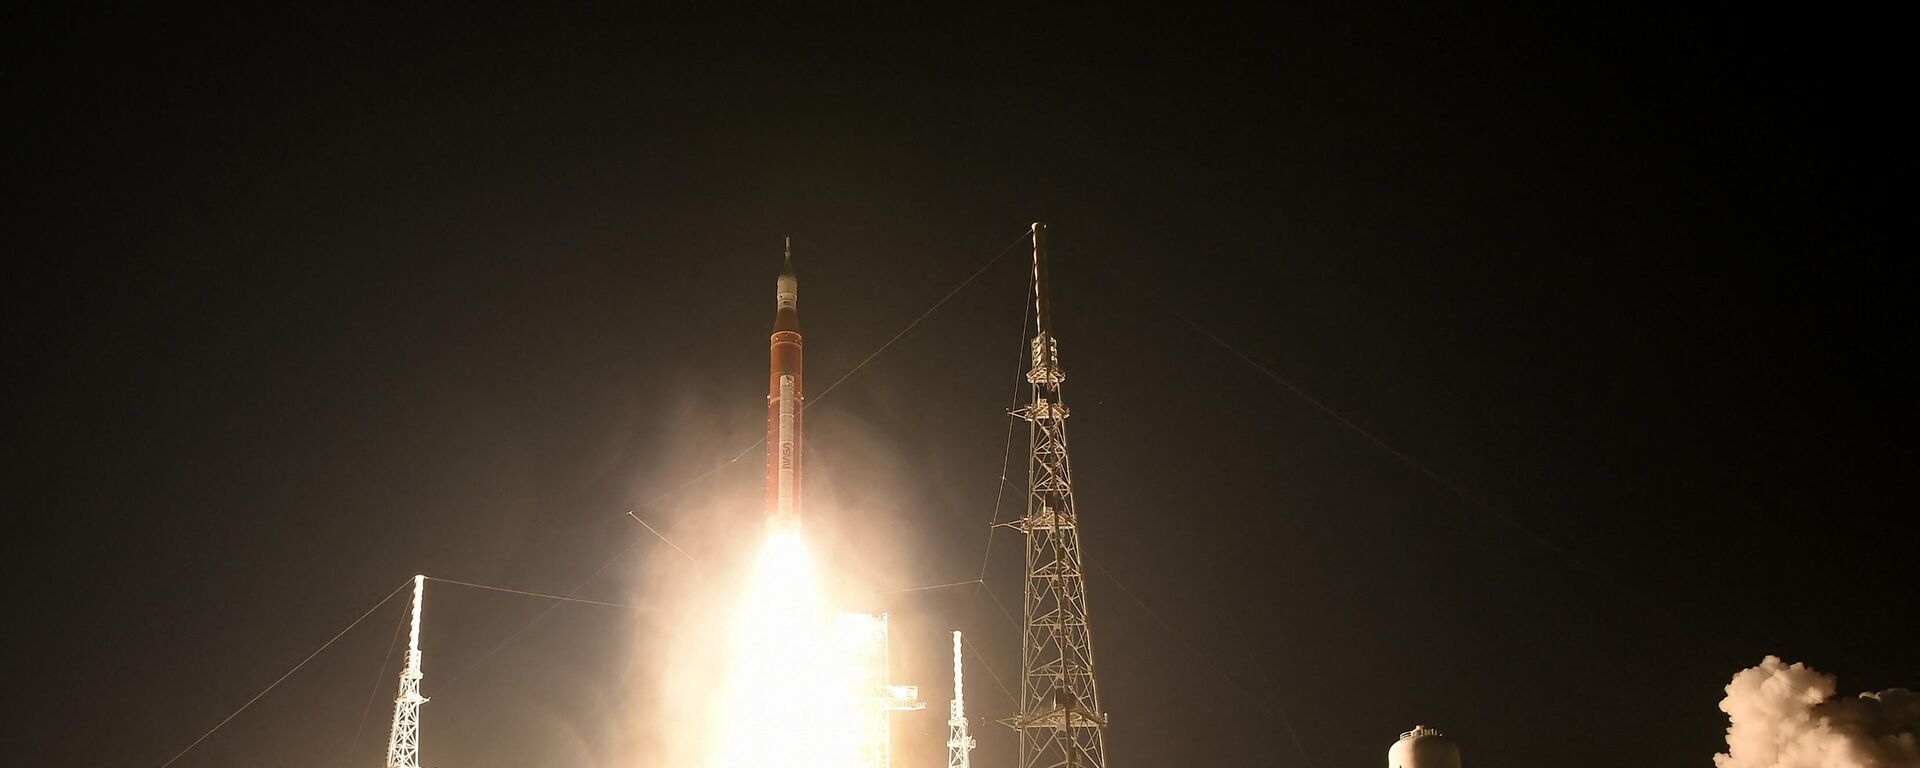 الصاروخ القمري آرتيمس-1 غير المأهول ينطلق من منصة الإطلاق 39B في مركز كينيدي للفضاء التابع لوكالة ناسا في كيب كانافيرال، فلوريدا، 16 نوفمبر/ تشرين الثاني 2022 - سبوتنيك عربي, 1920, 26.01.2023